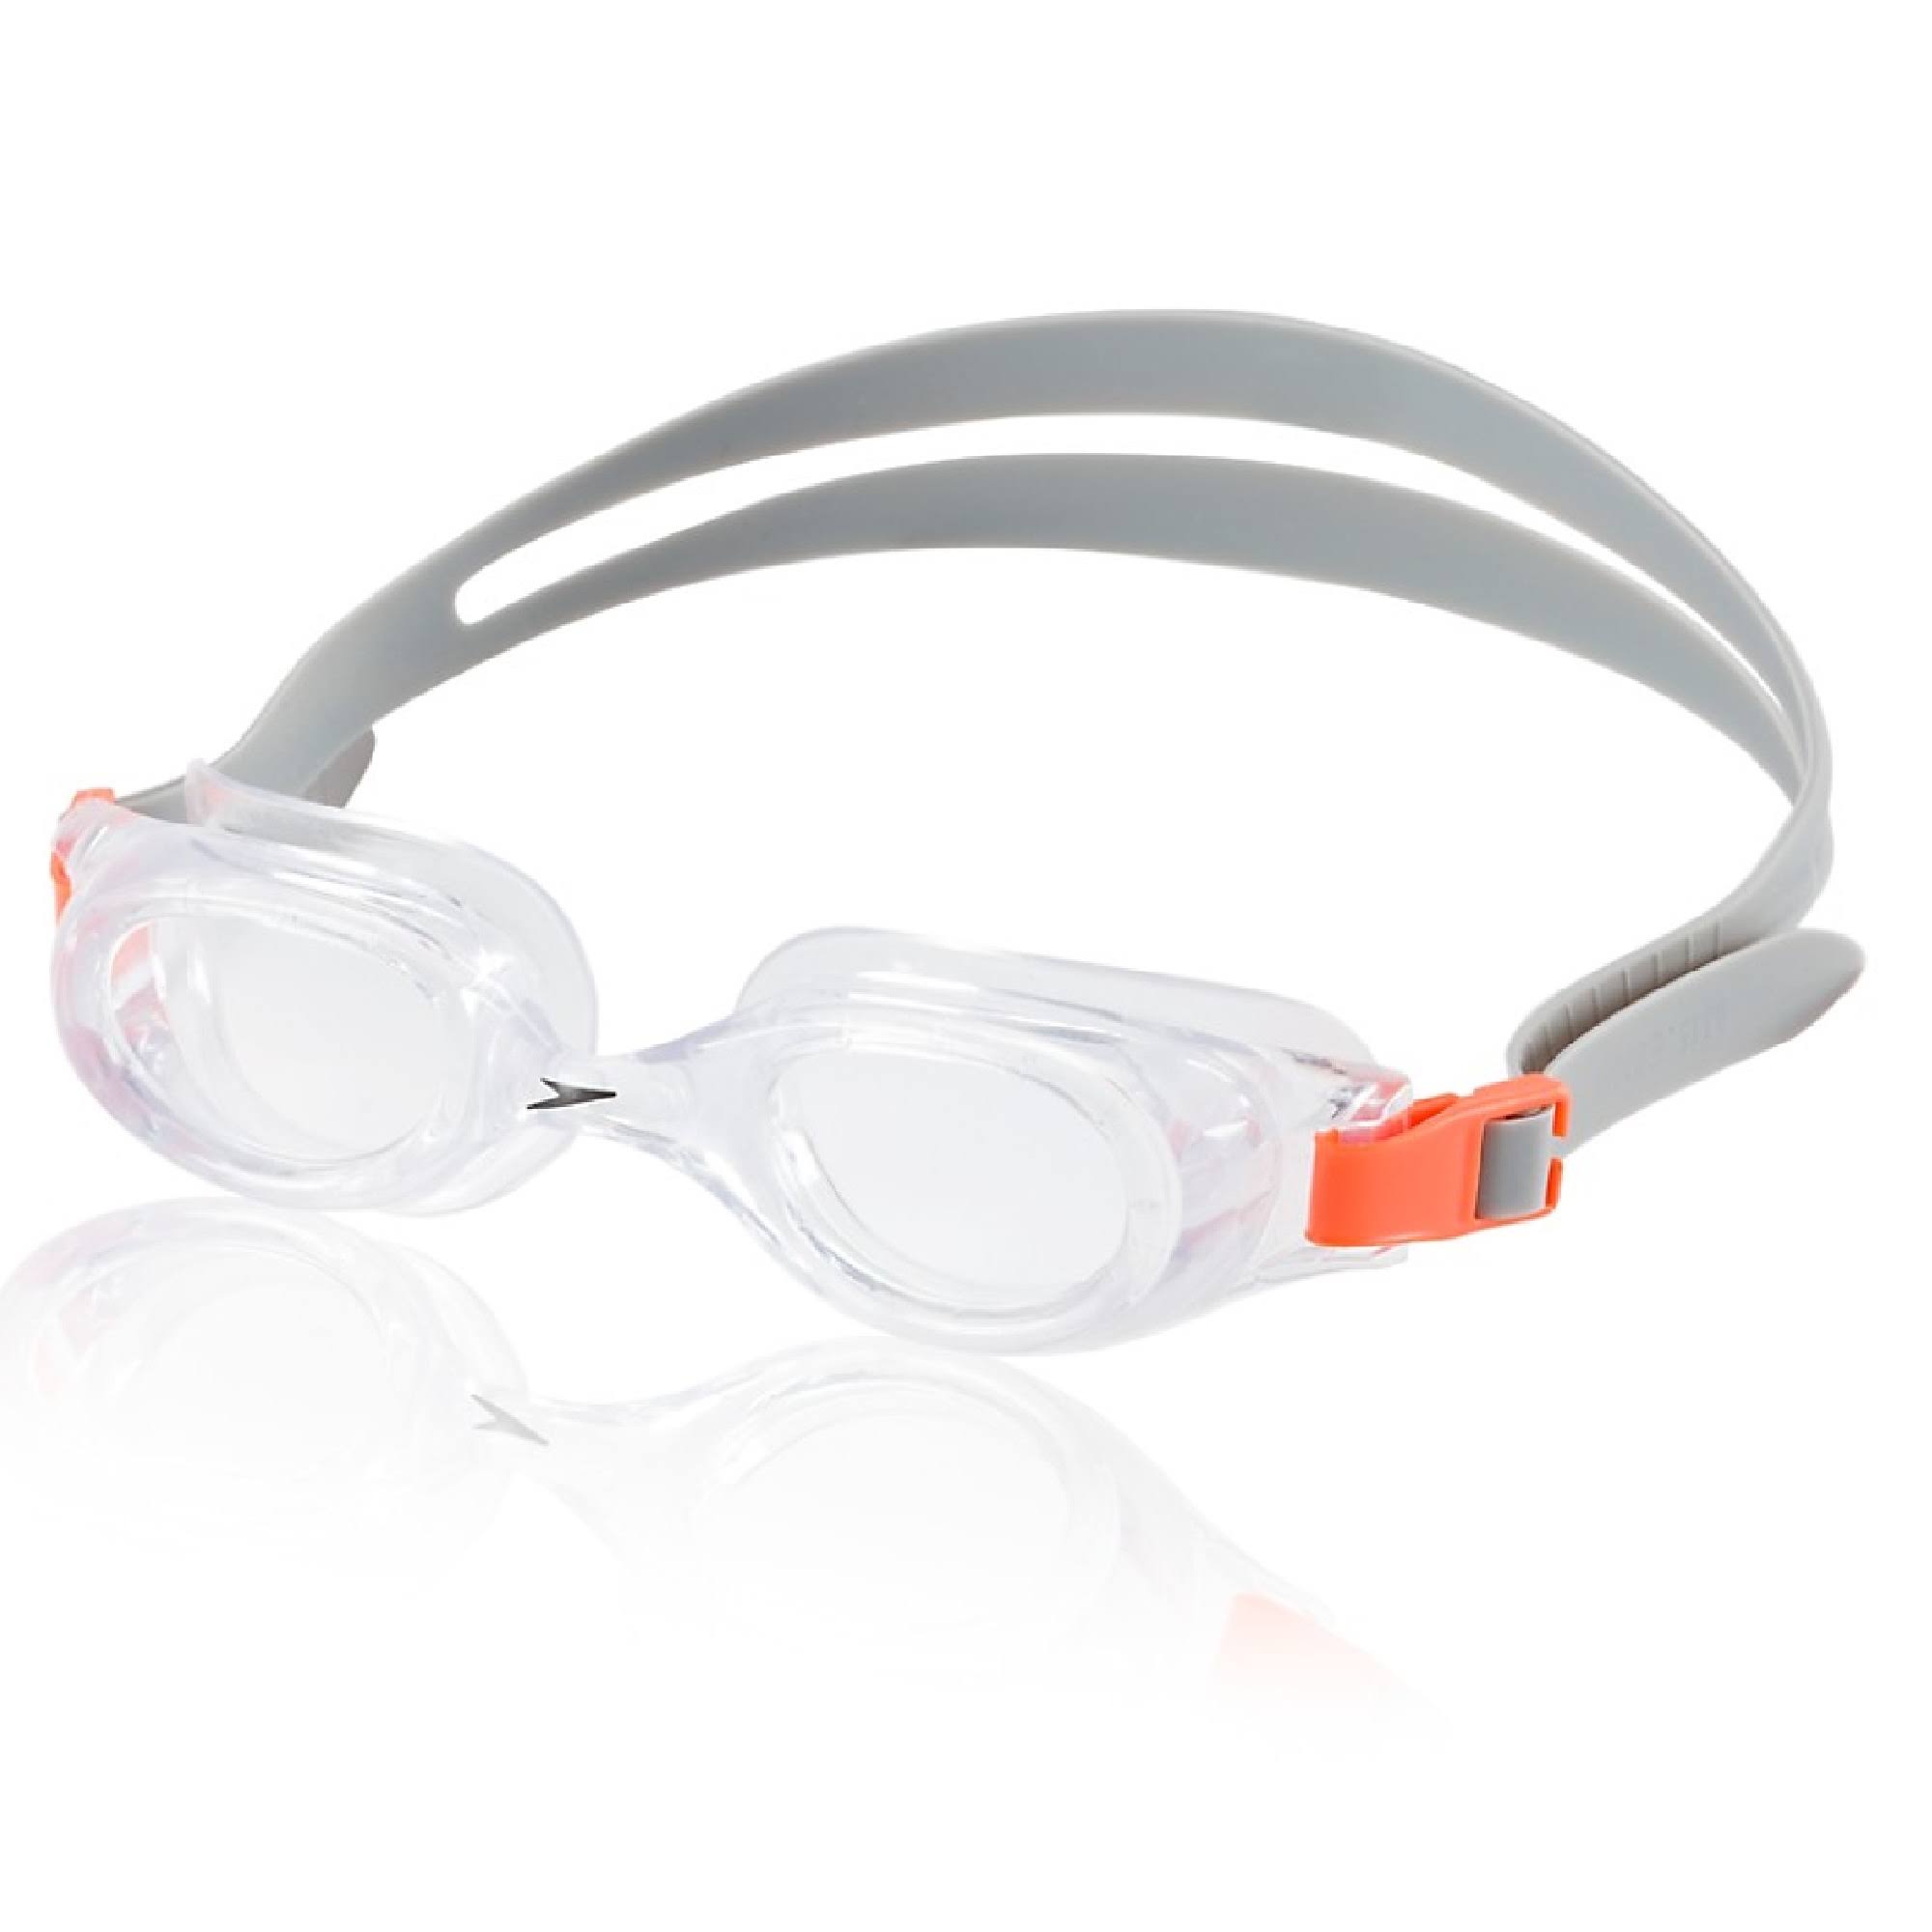 Speedo Junior Hydrospex Swim Goggles